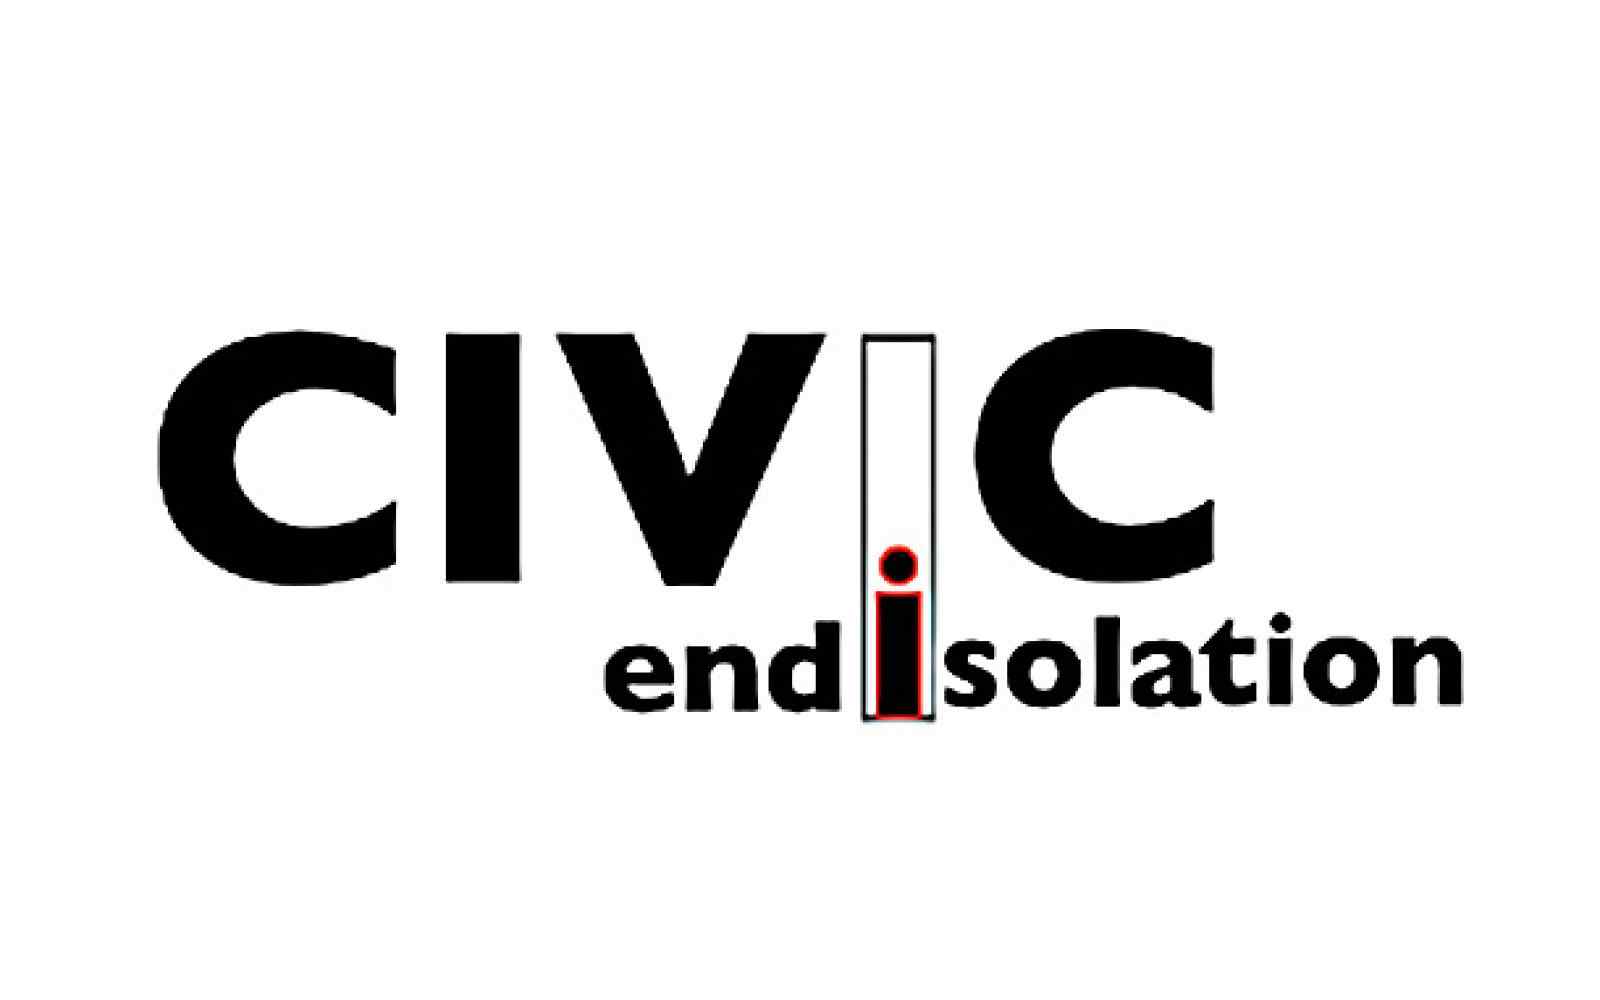 CIVIC - End Isolation - logo